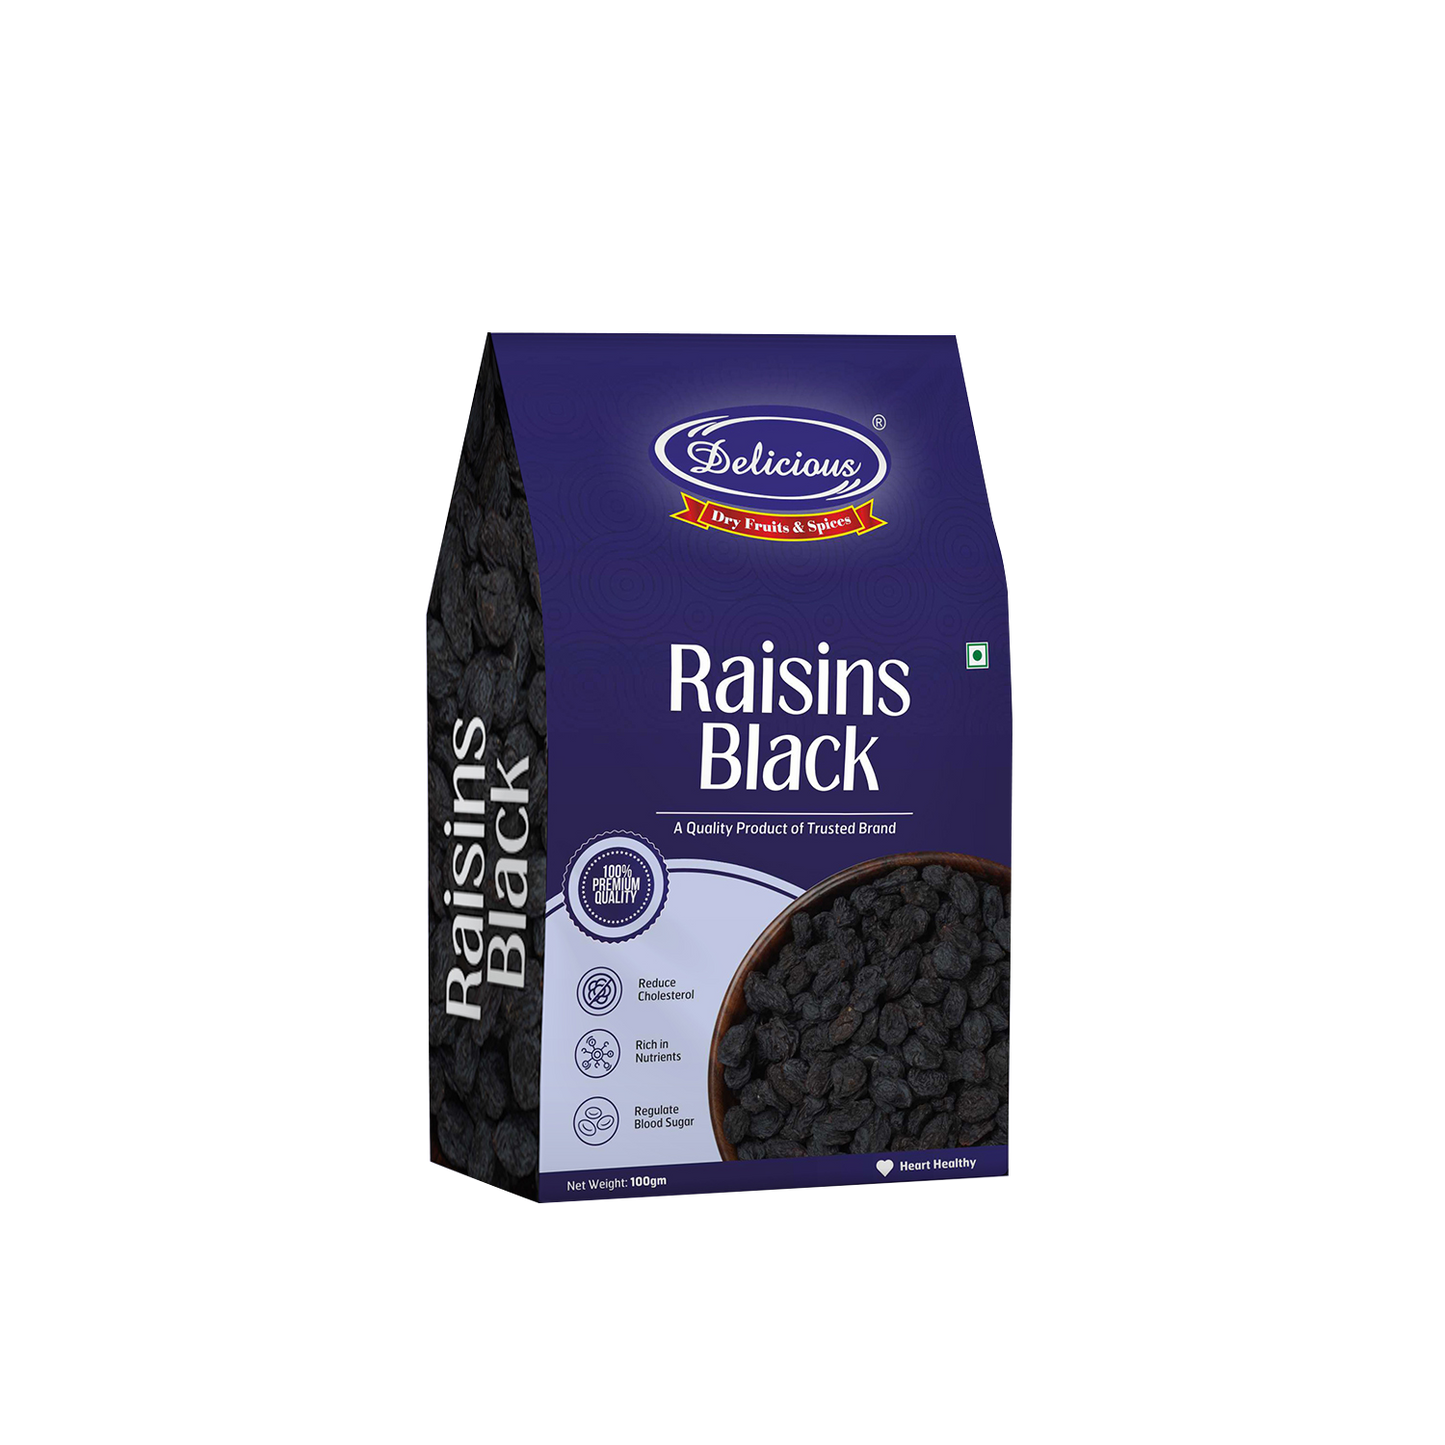 Delicious Exotic Black Raisins